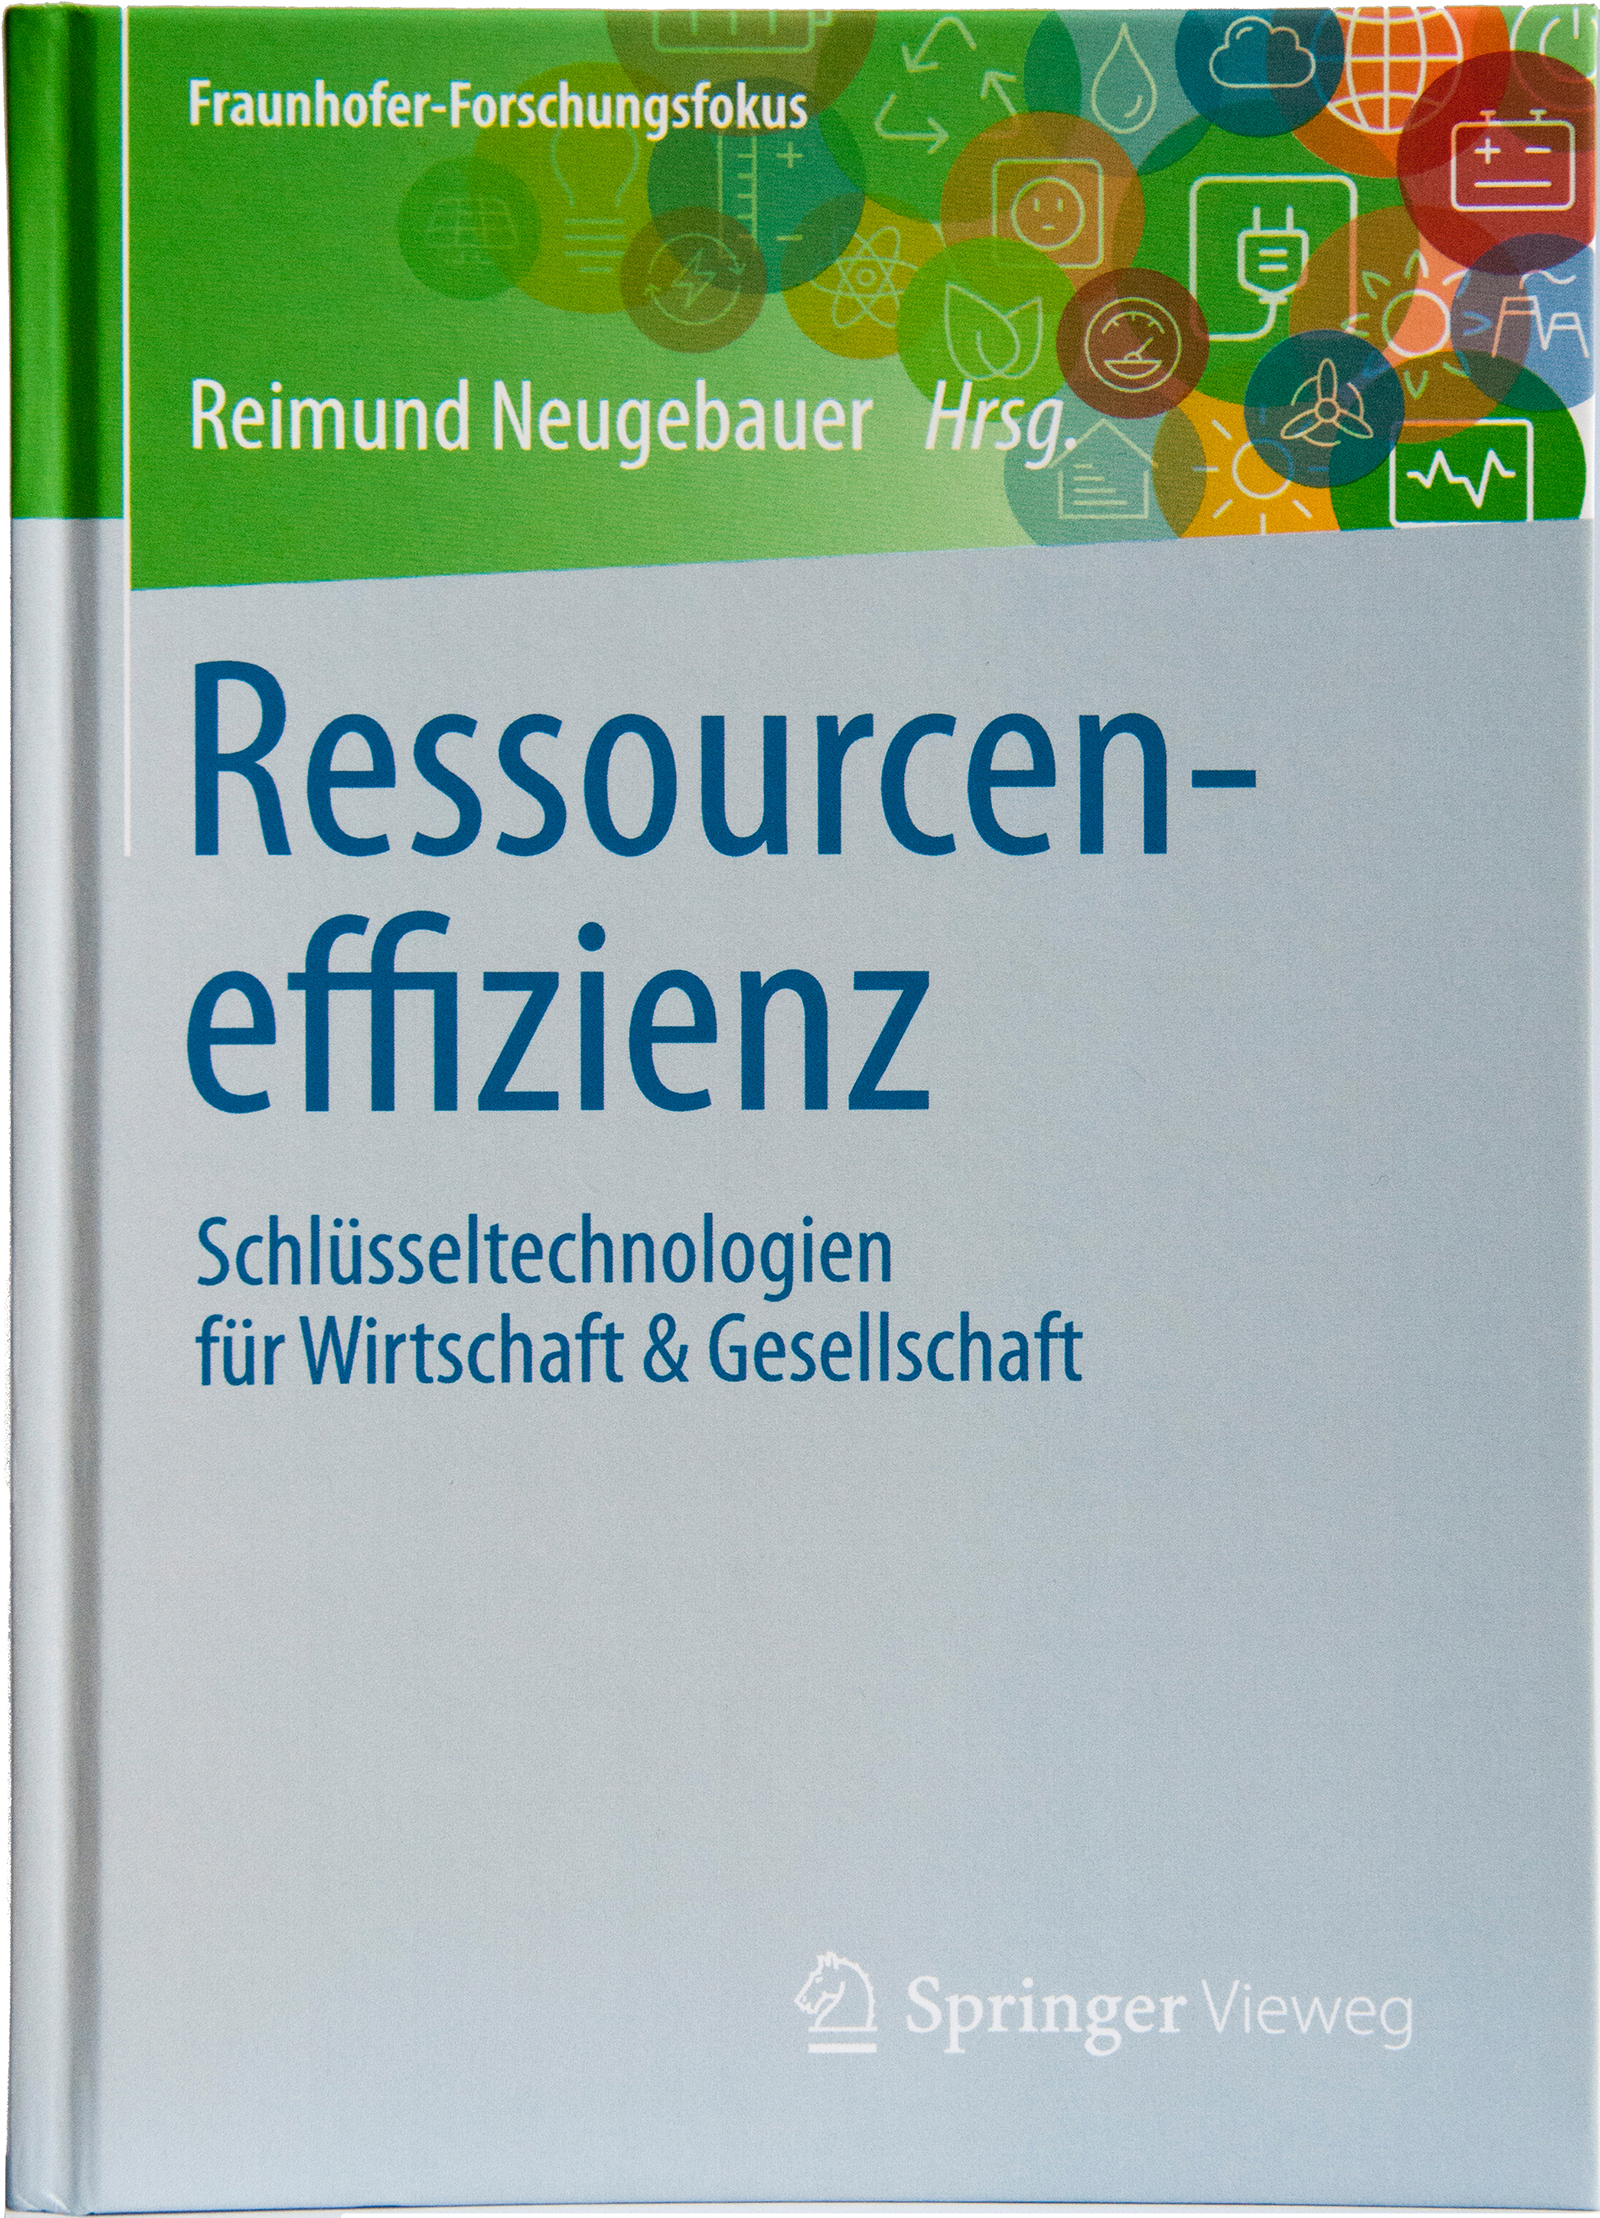 Diese Publikation ist der erste Band der Serie »Fraunhofer Forschungsfokus - Schlüsseltechnologien für Wirtschaft & Gesellschaft«. 